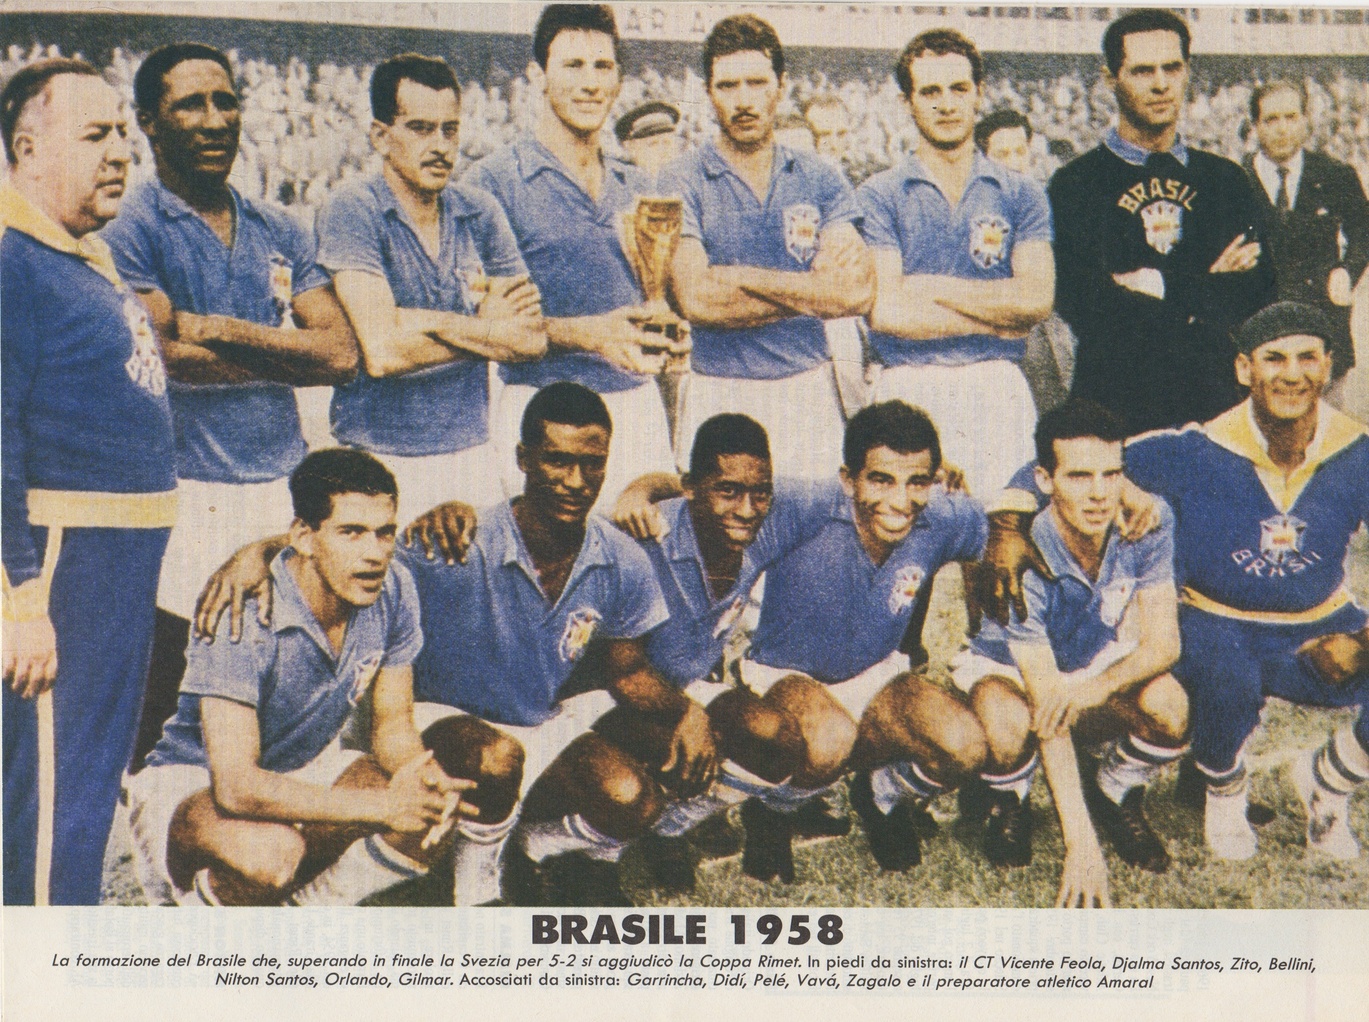 Brazil’s 1958 World Cup-winning team.